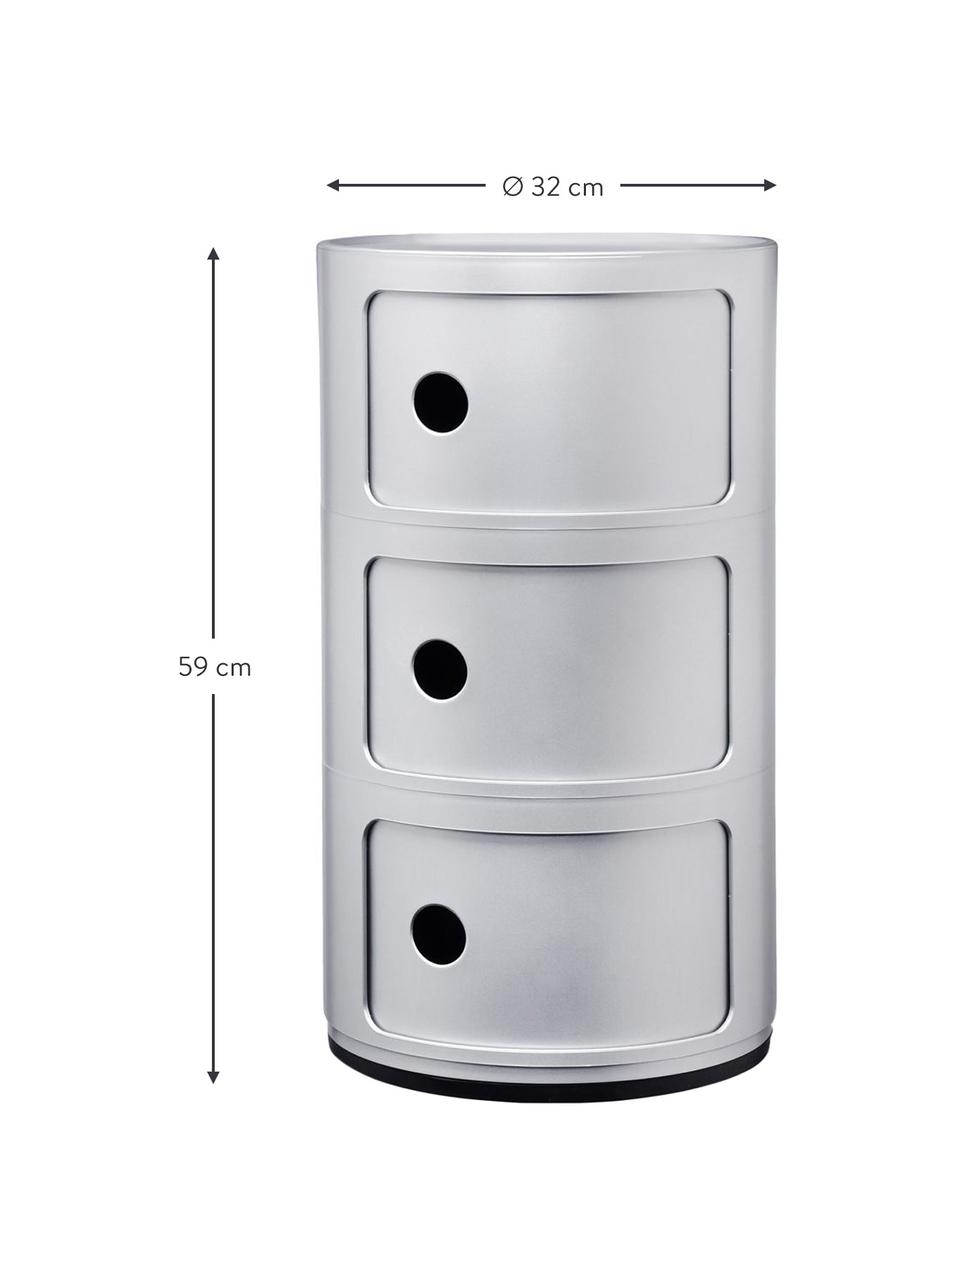 Design Container Componibili 3 Modules in Silber, Kunststoff (ABS), lackiert, Greenguard-zertifiziert, Silber, matt, Ø 32 x H 59 cm